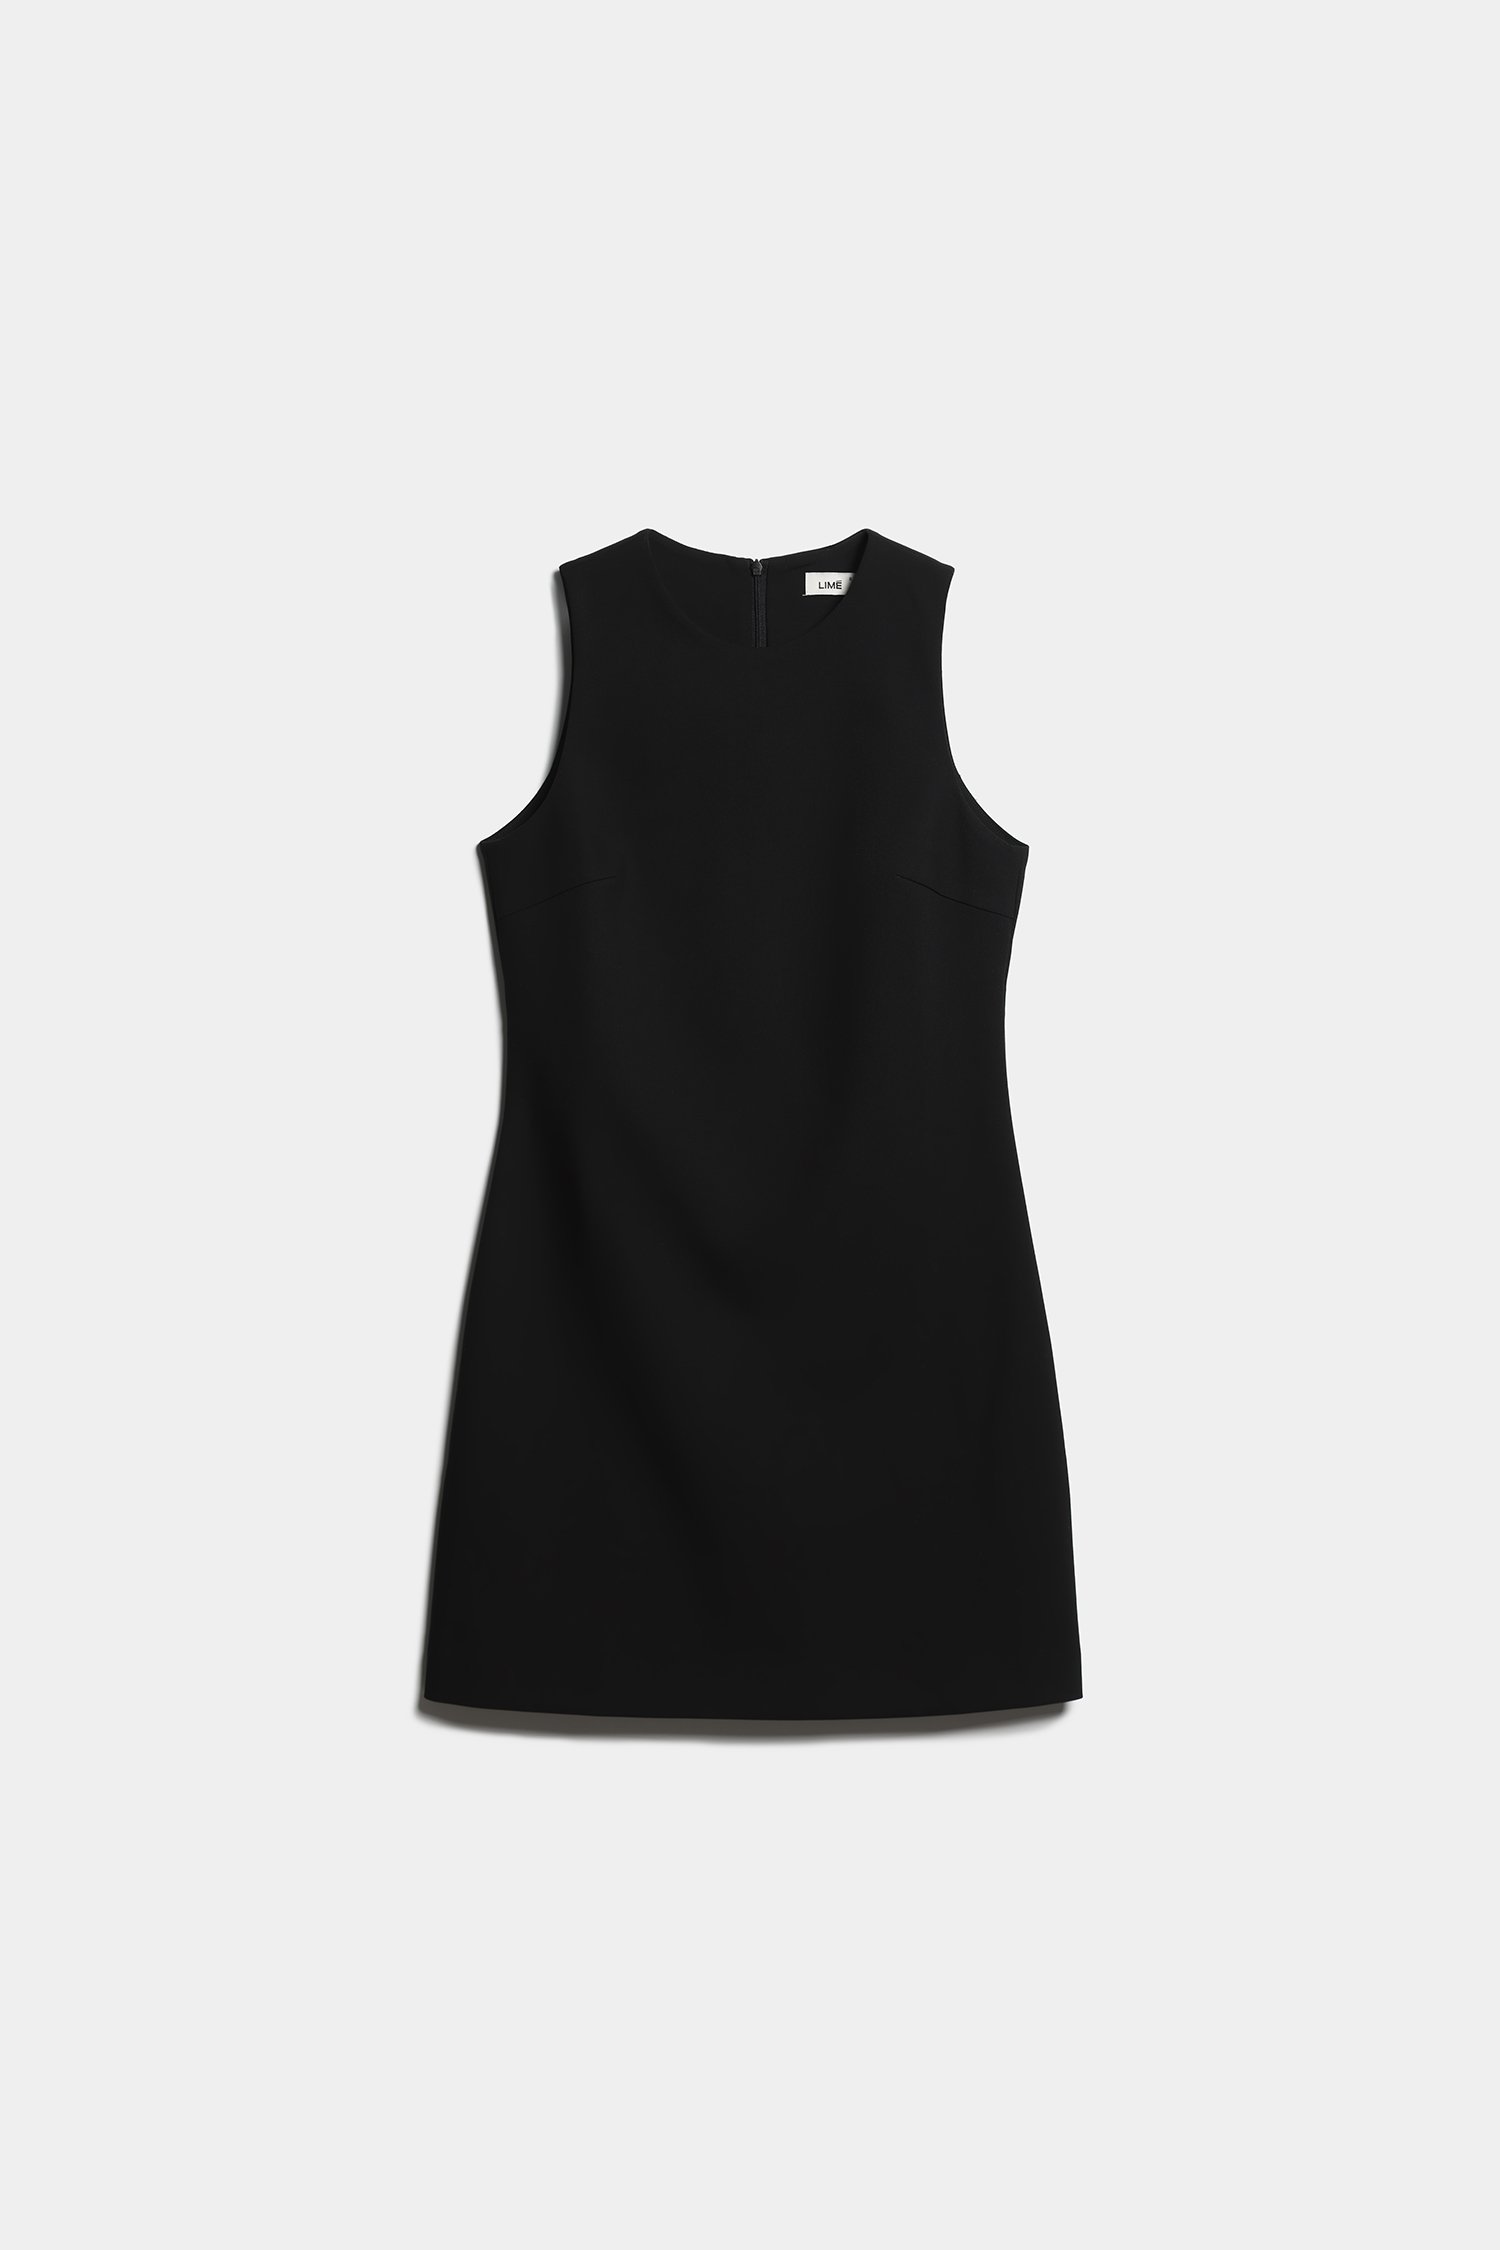 Маленькое черное платье — must-have гардероба каждой девушки. 8 стильных опций на любой бюджет